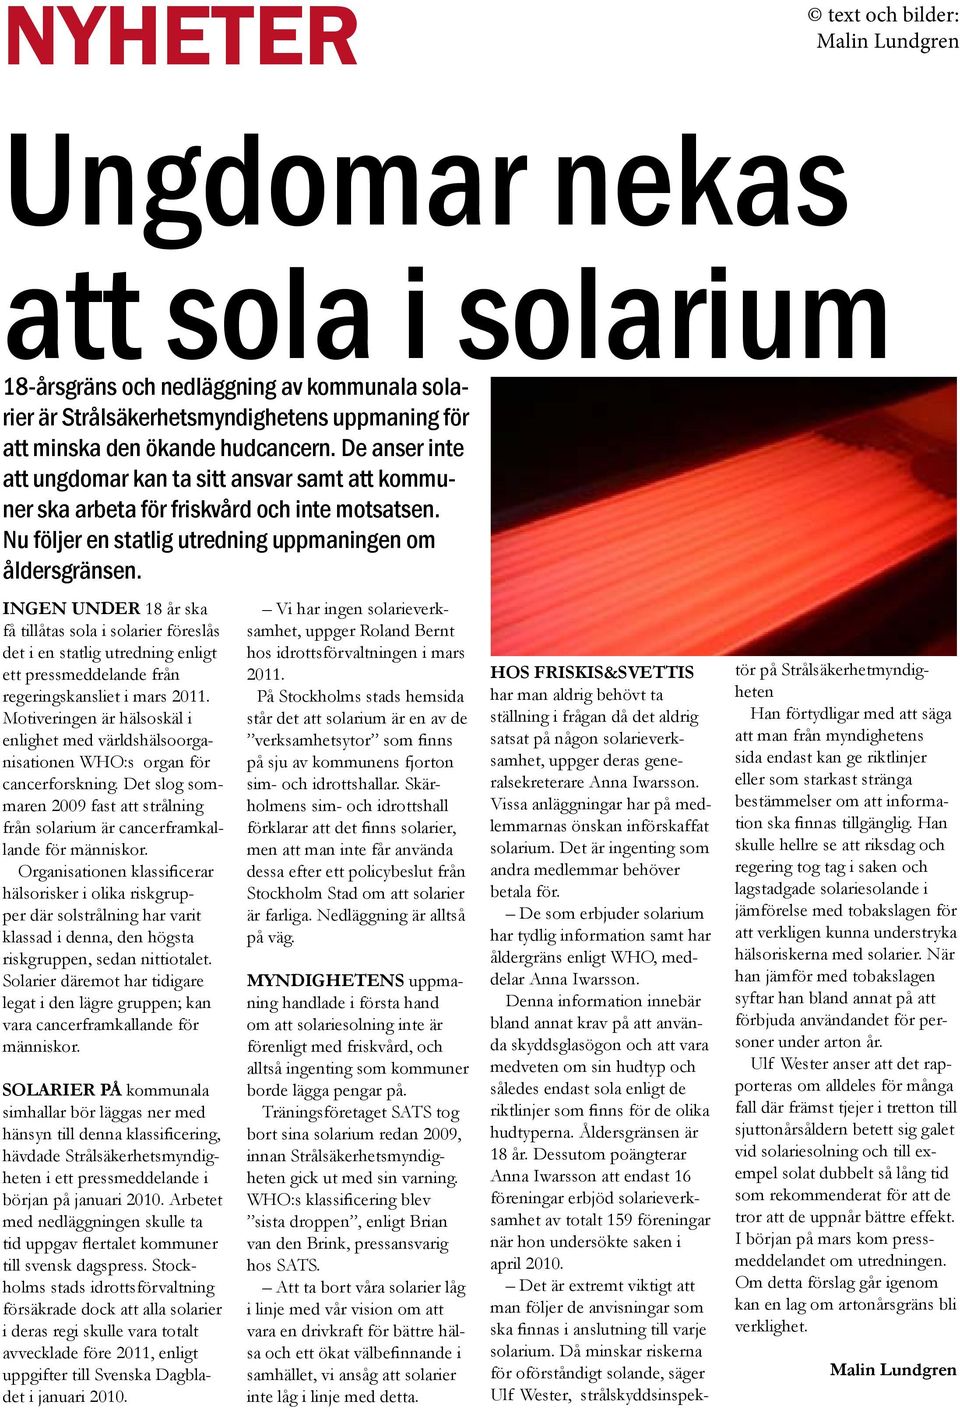 INGEN UNDER 18 år ska få tillåtas sola i solarier föreslås det i en statlig utredning enligt ett pressmeddelande från regeringskansliet i mars 2011.